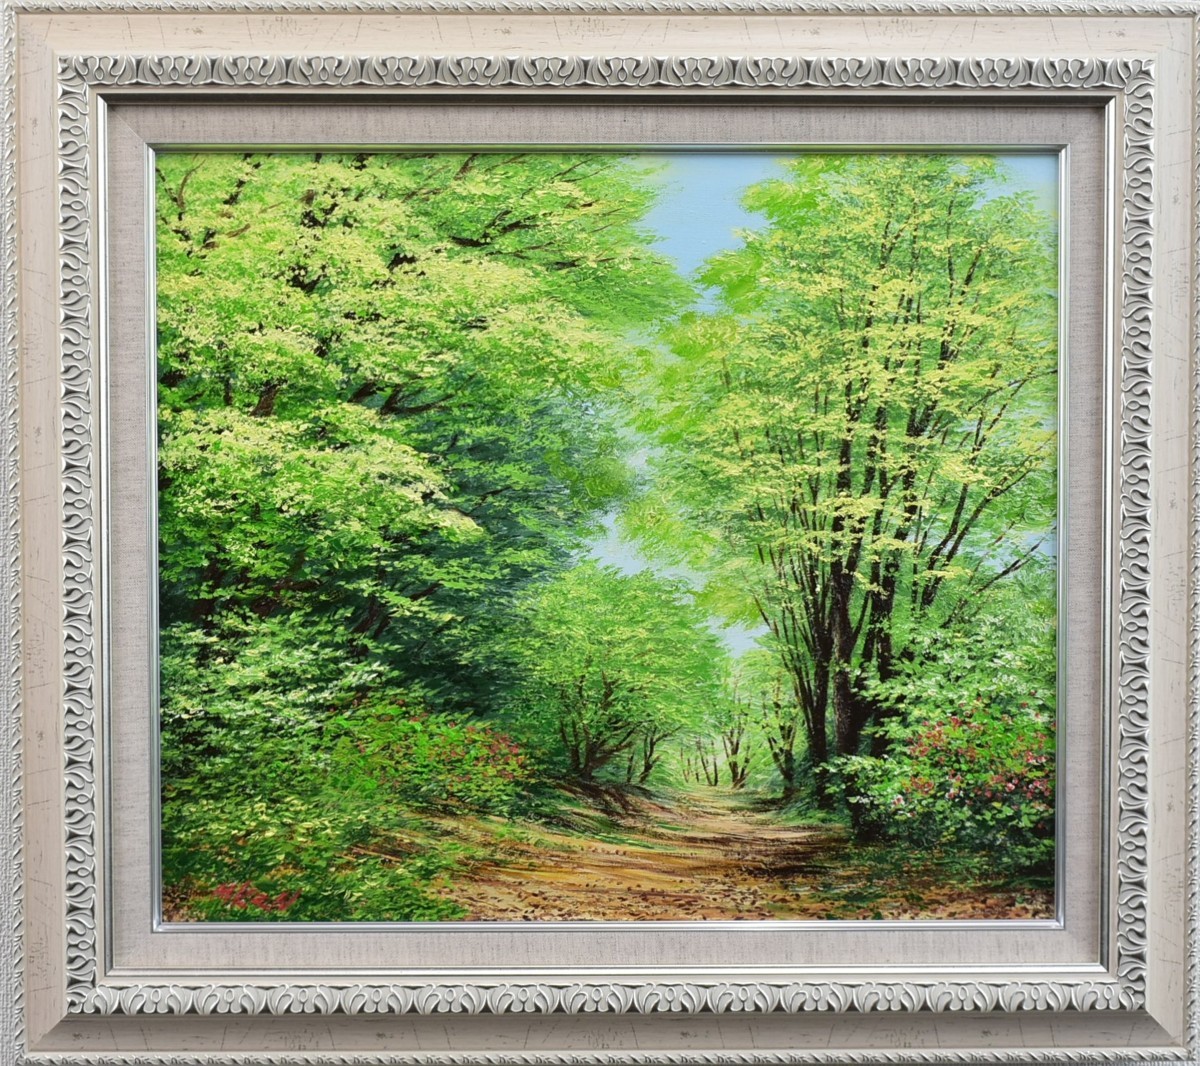 [عمل أصيل] لوحة كينيتشي موريتا لغابة الربيع الانتقالية الغربية 10F [معرض ماساميتسو], تلوين, طلاء زيتي, طبيعة, رسم مناظر طبيعية